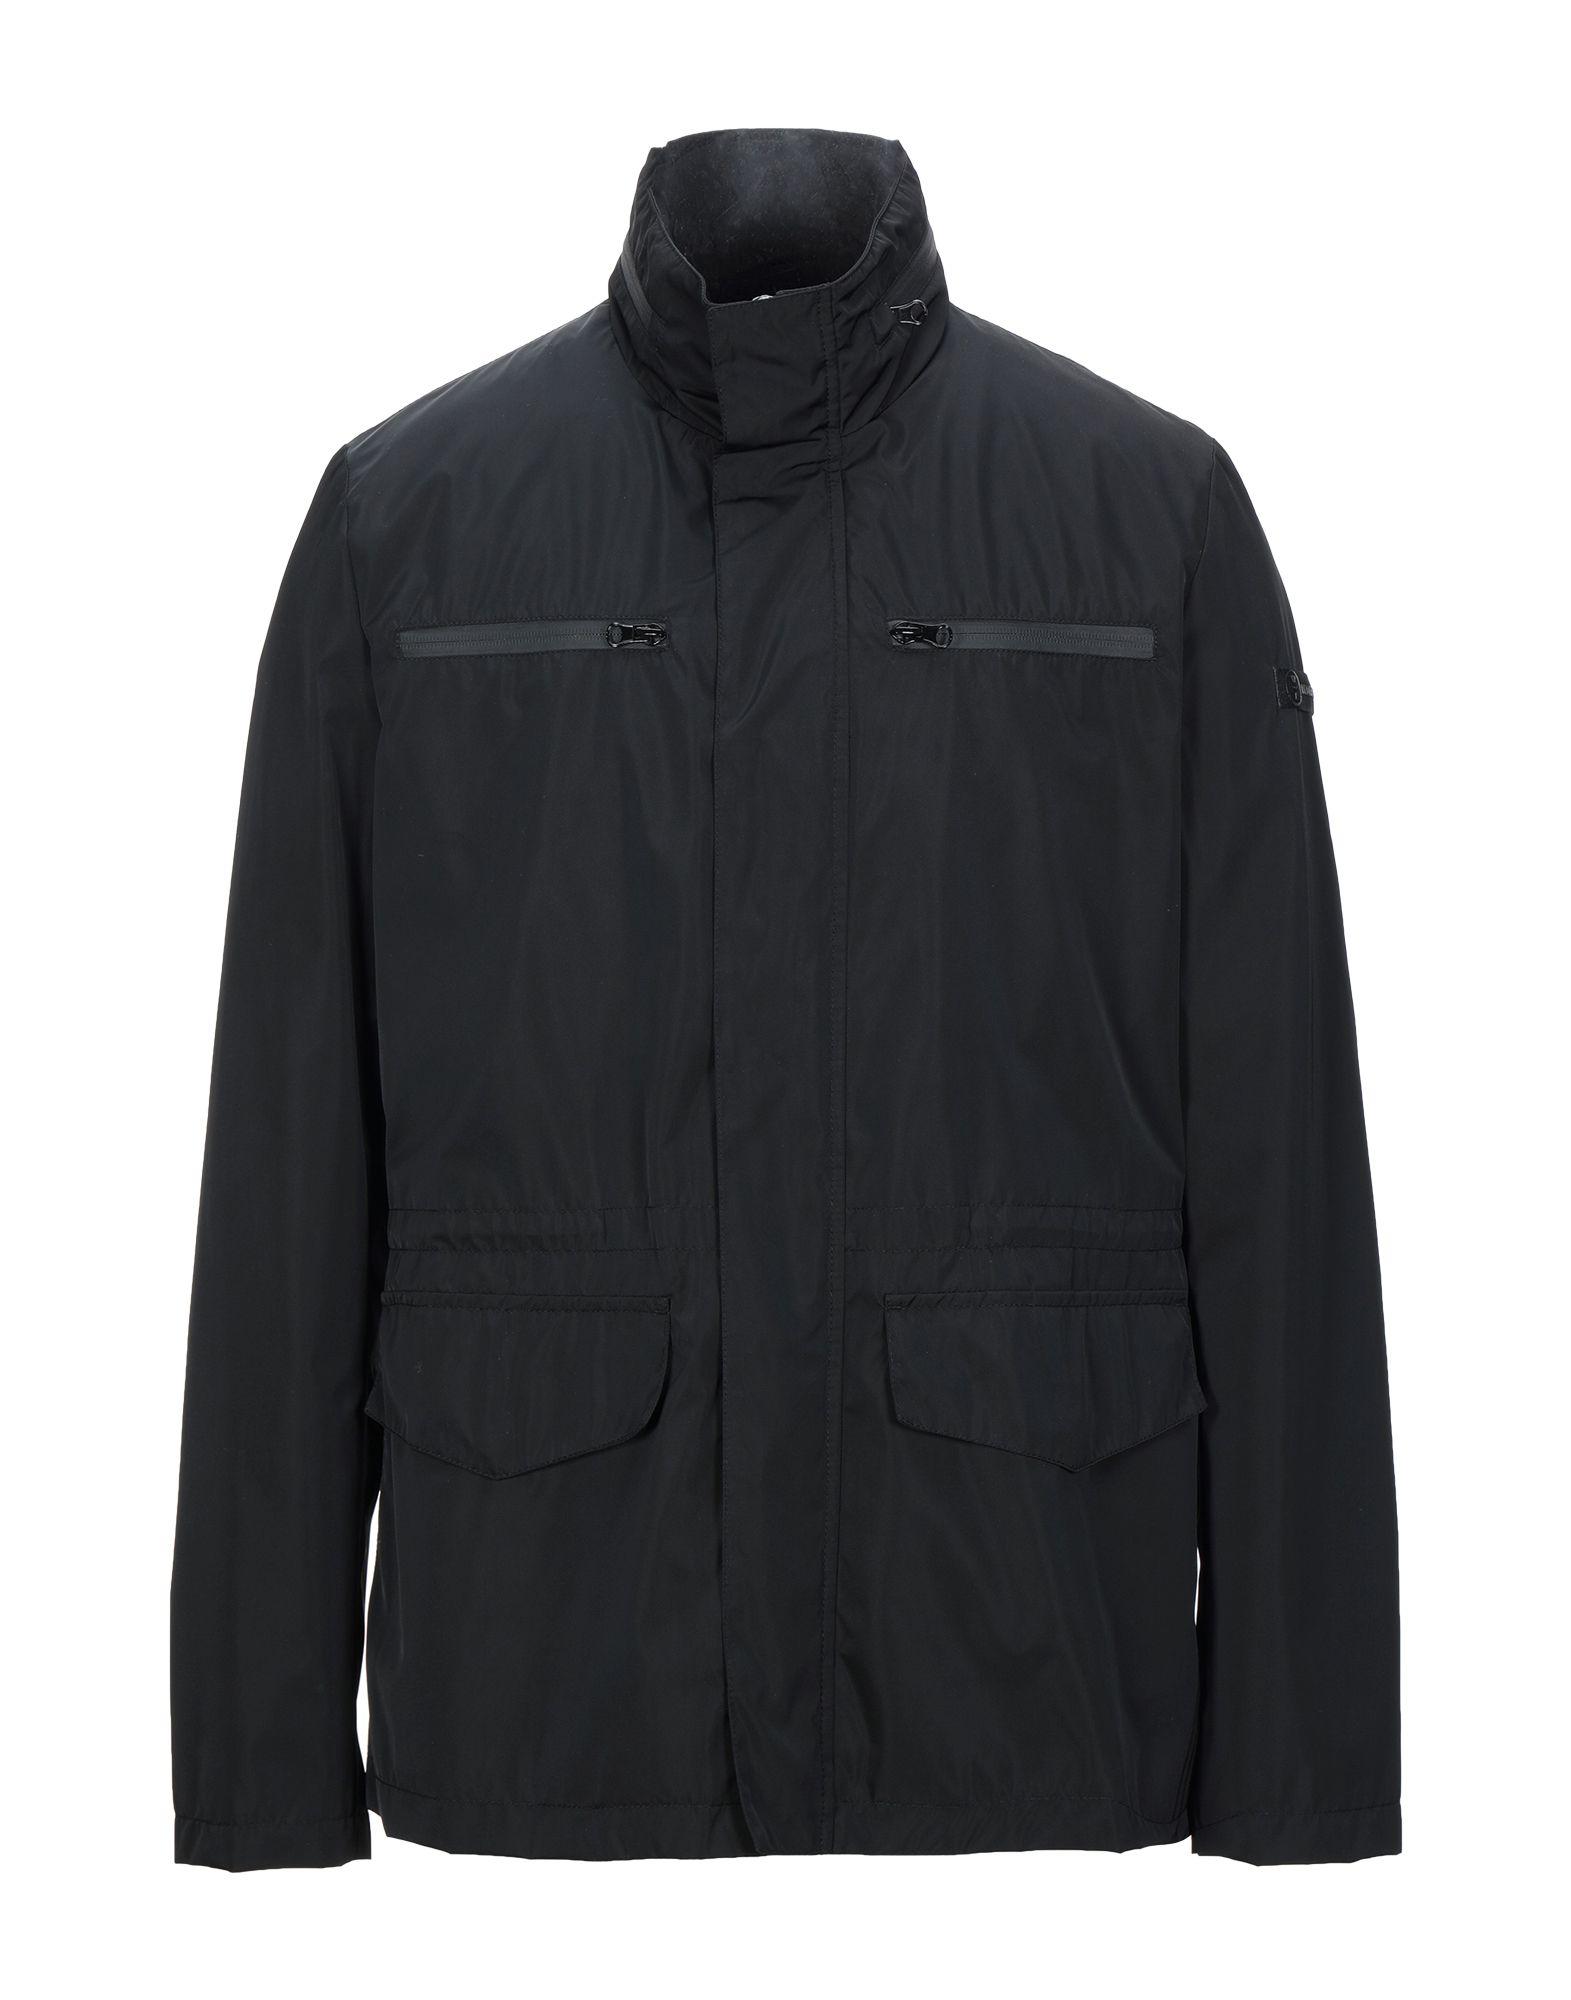 Lumberjack Synthetic Jacket in Black for Men - Lyst